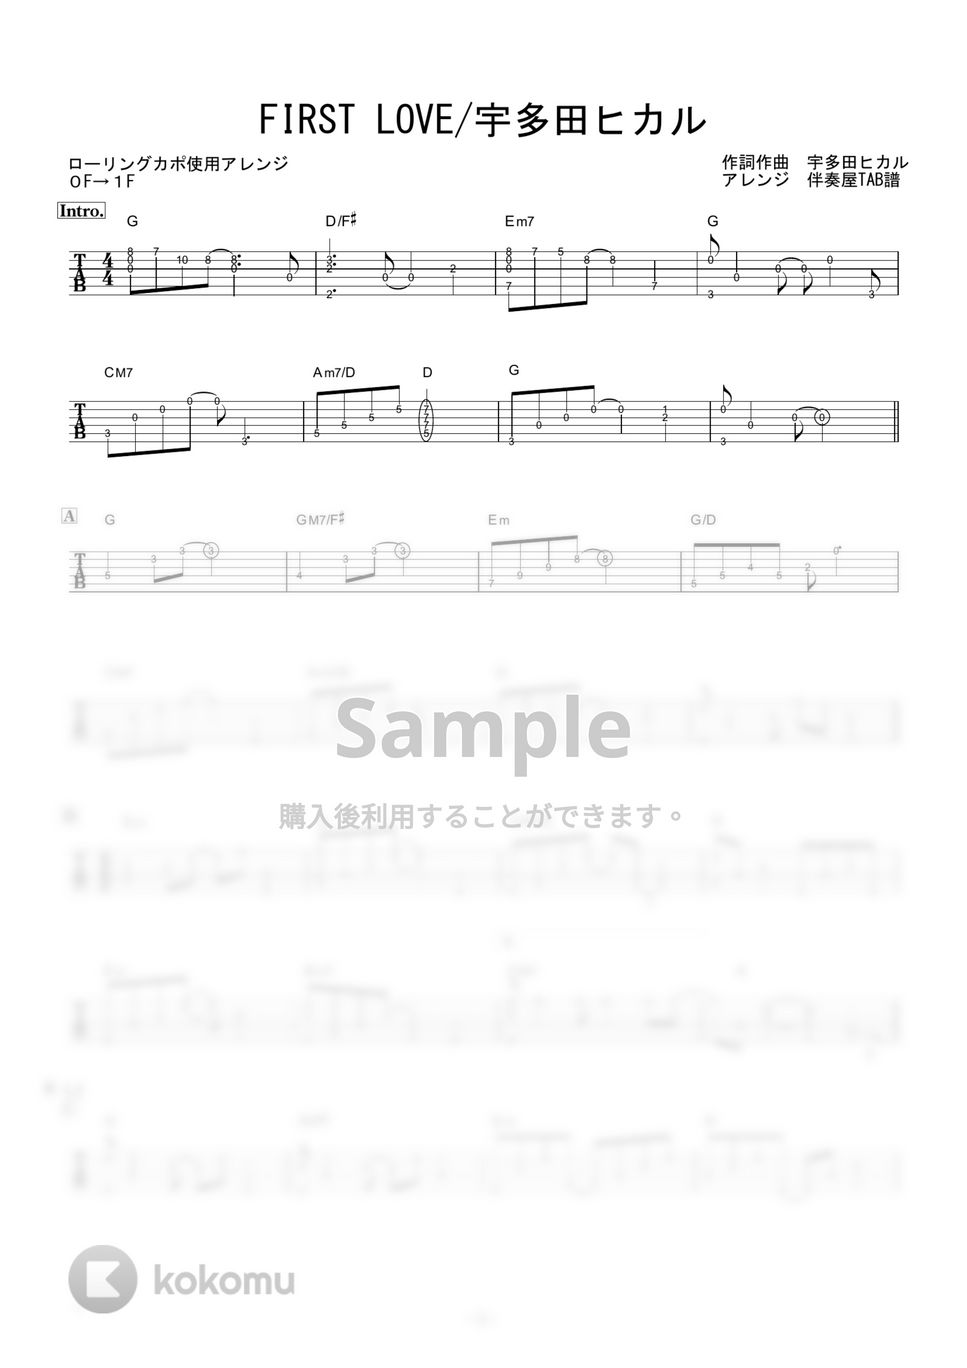 宇多田ヒカル - FIRST LOVE (ギター伴奏/イントロ・間奏ソロギター) by 伴奏屋TAB譜